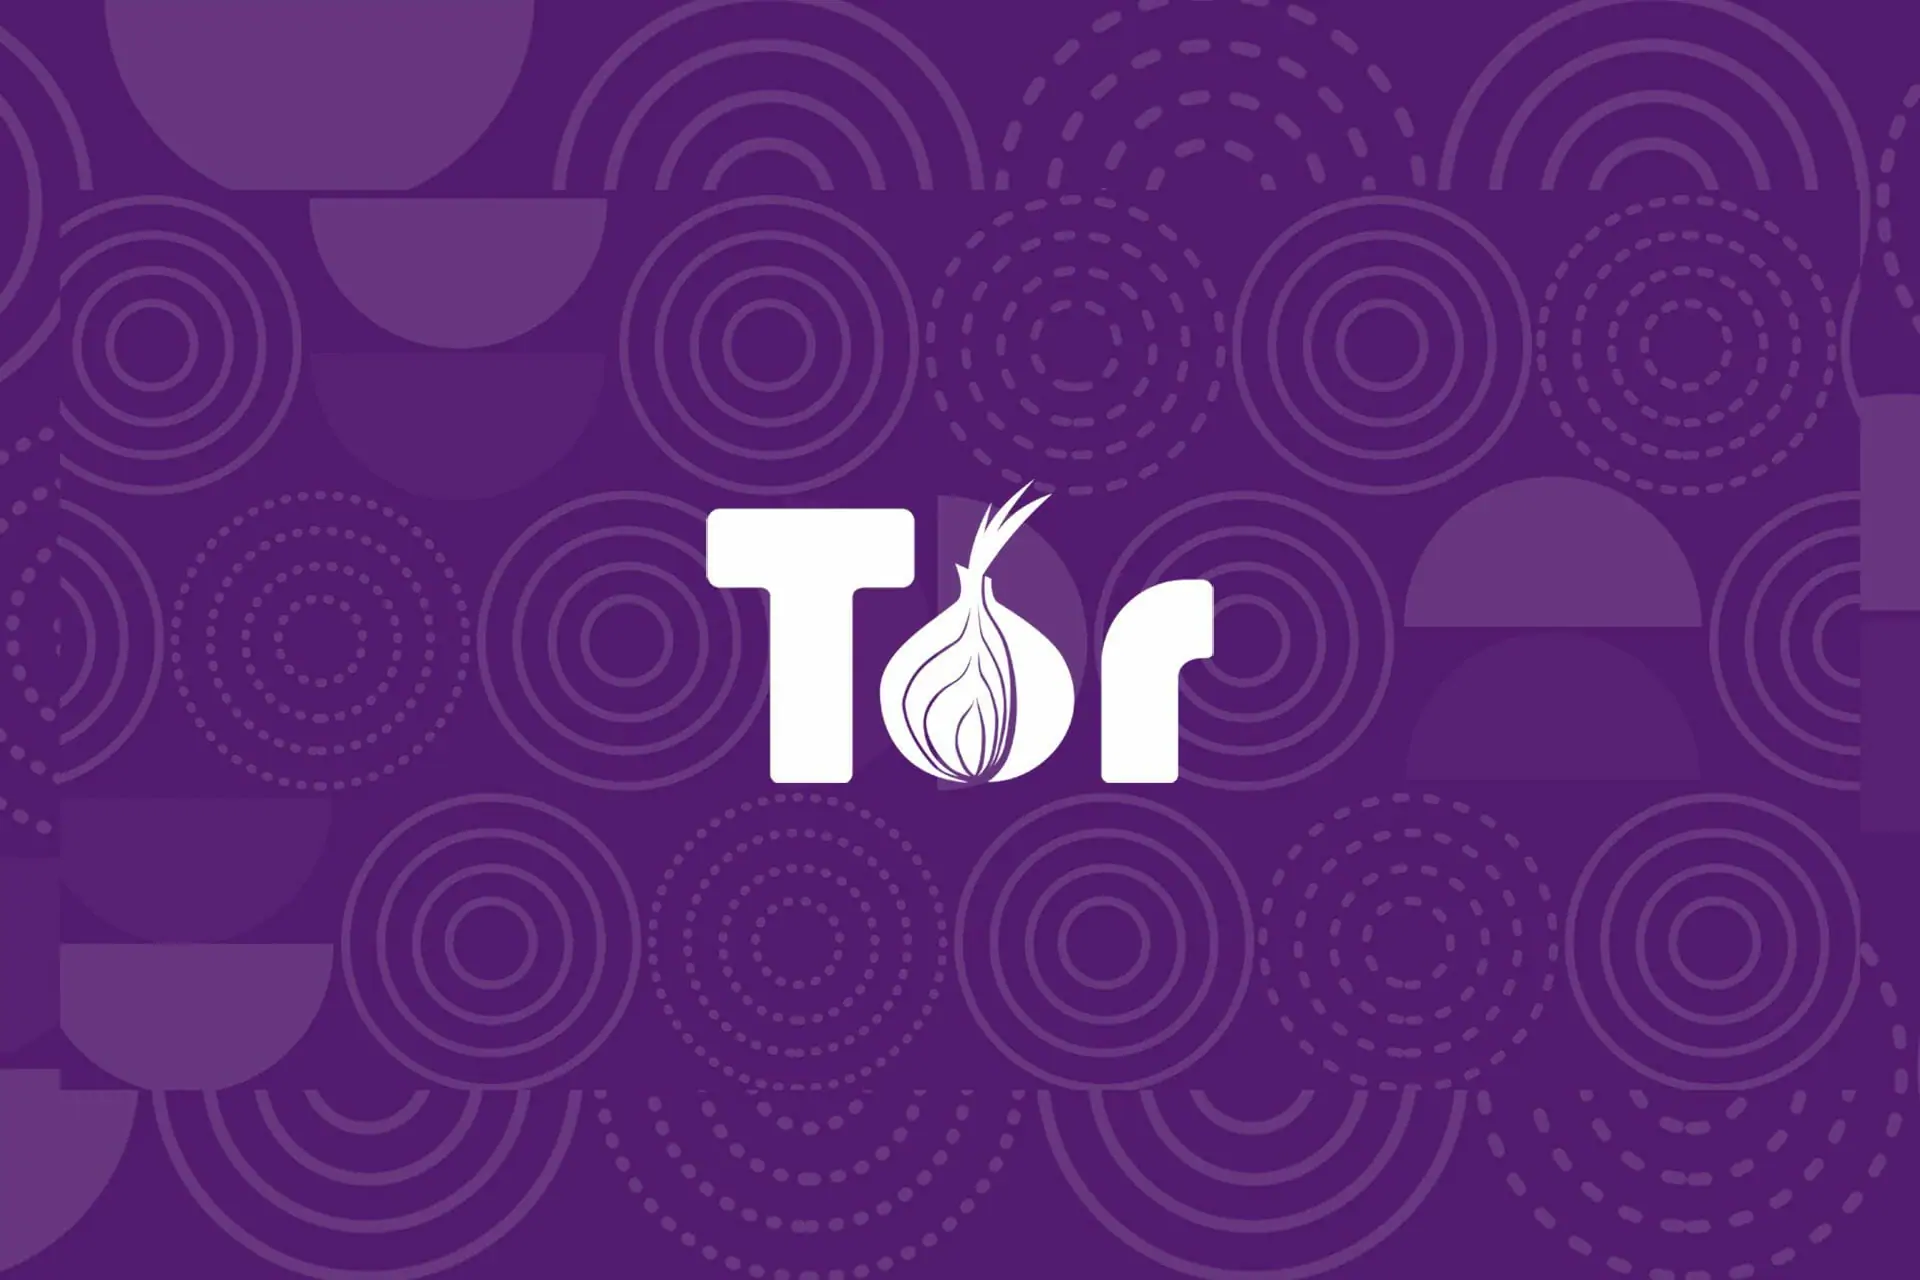 Tor browser на виндовс 10 скачать бесплатно тор браузер для компьютера gidra